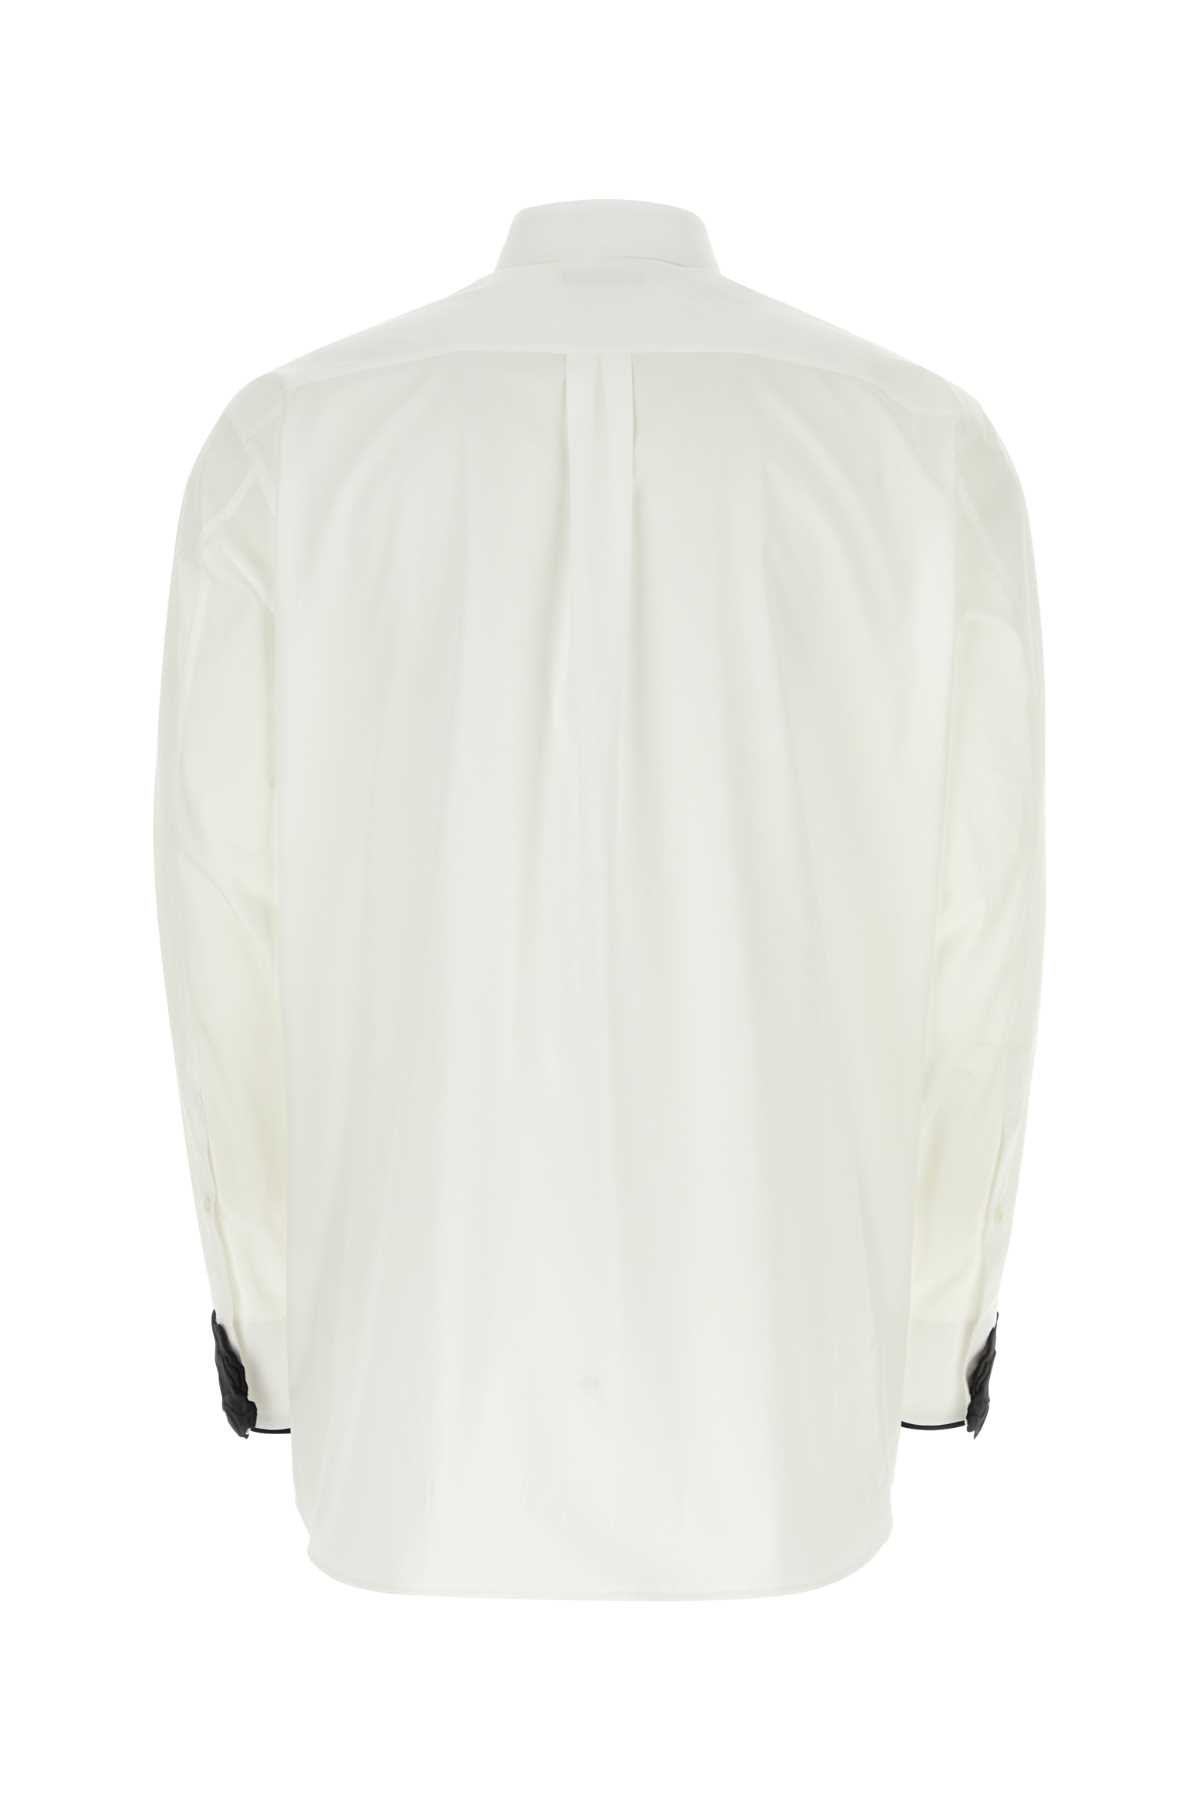 Valentino White Poplin Shirt In Bianconero